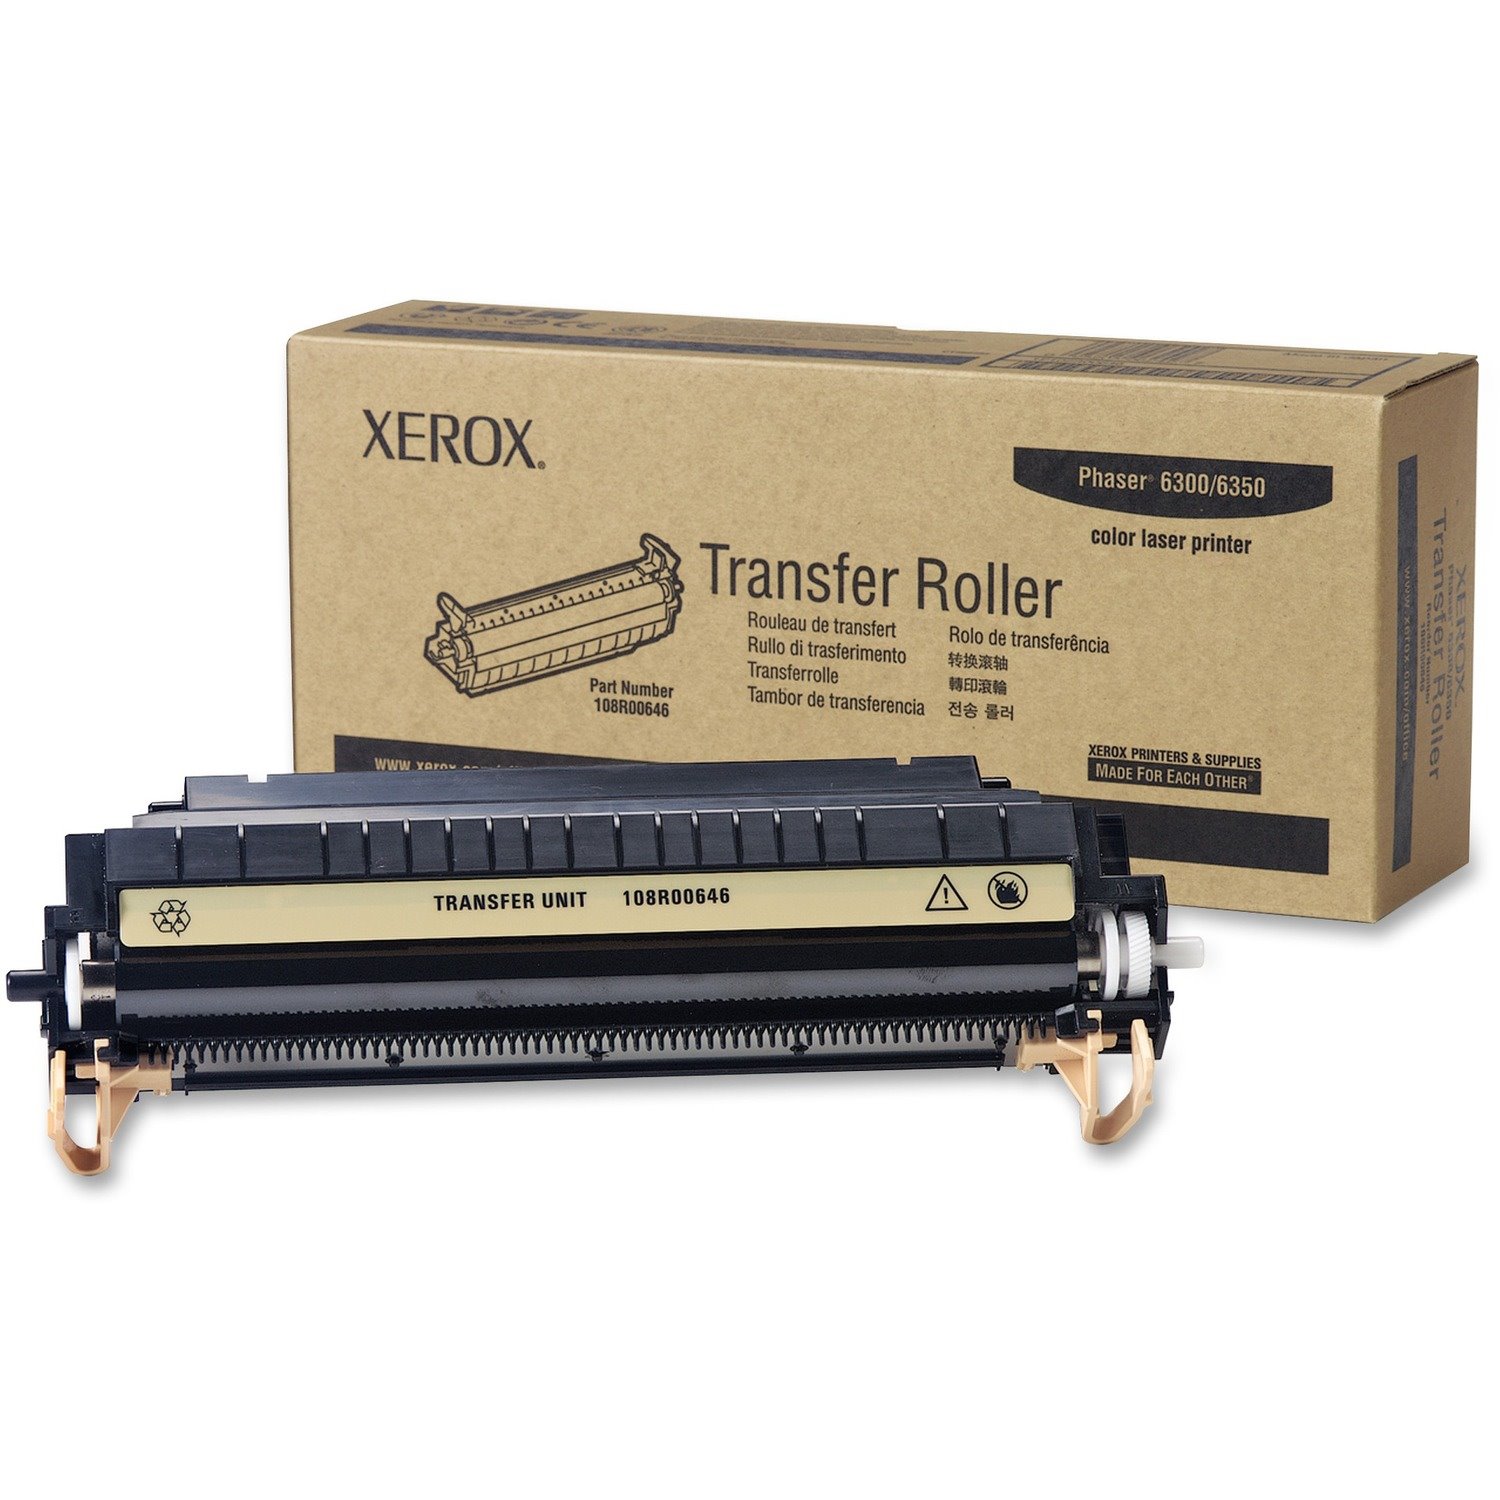 Xerox Phaser 6360 Transfer Roller